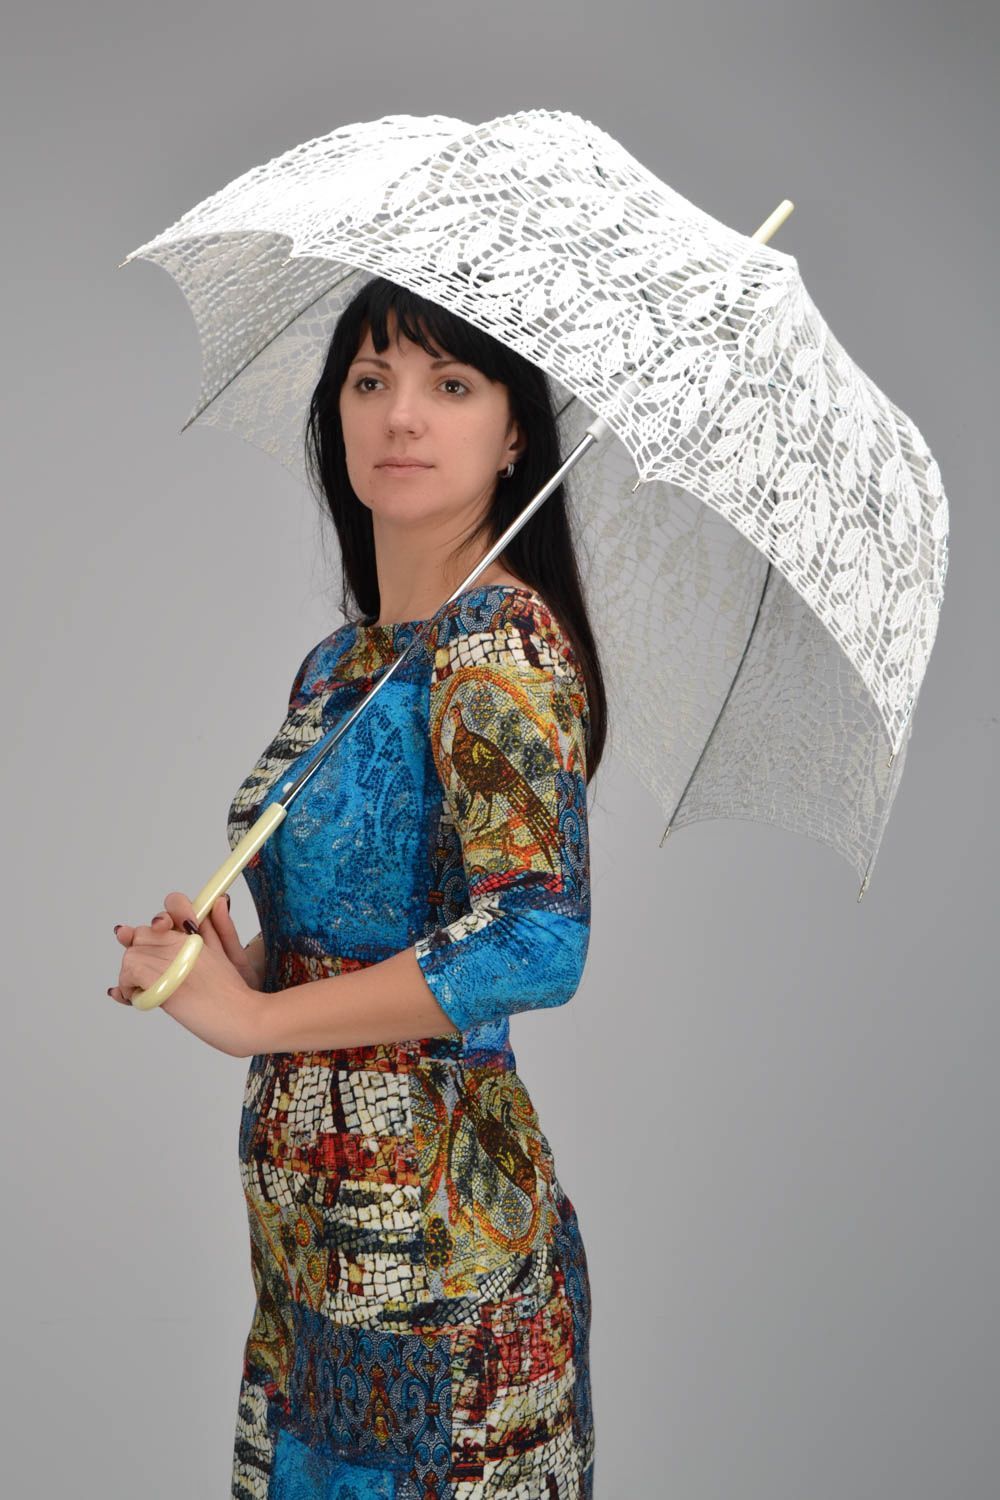 Зонтик на голову от солнца фото